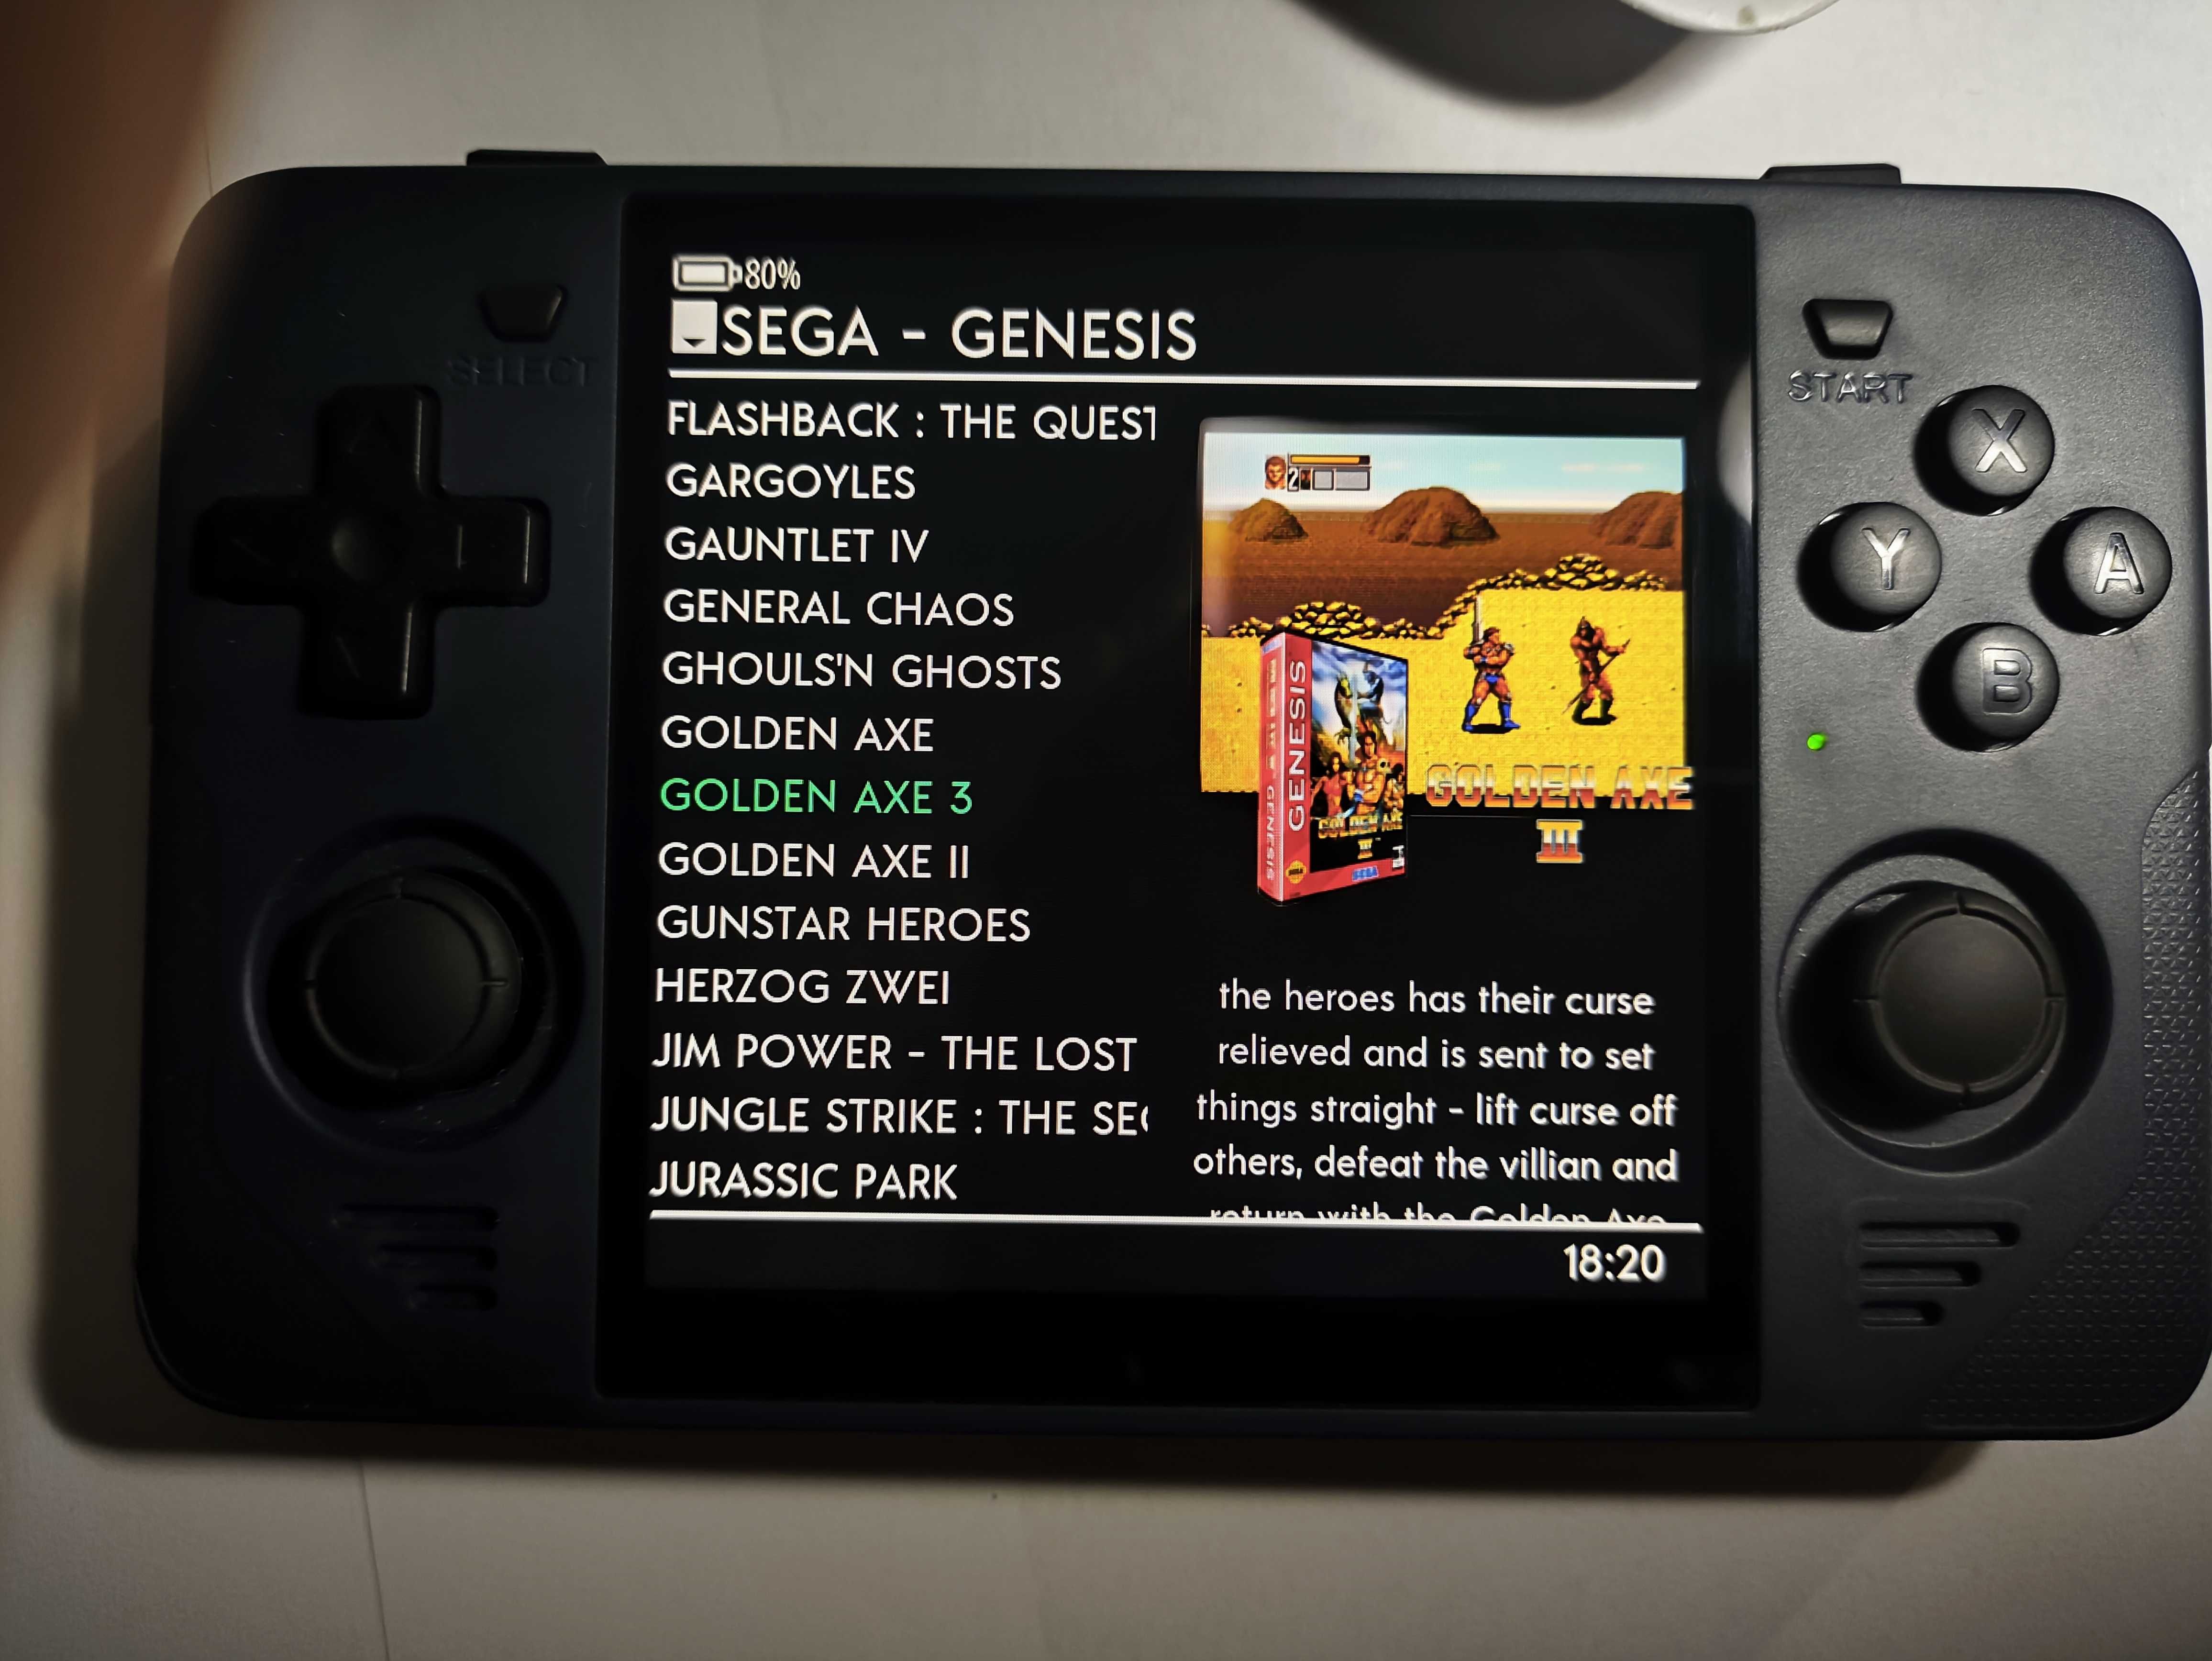 Powkiddy RGB30 ігрова ретро консоль